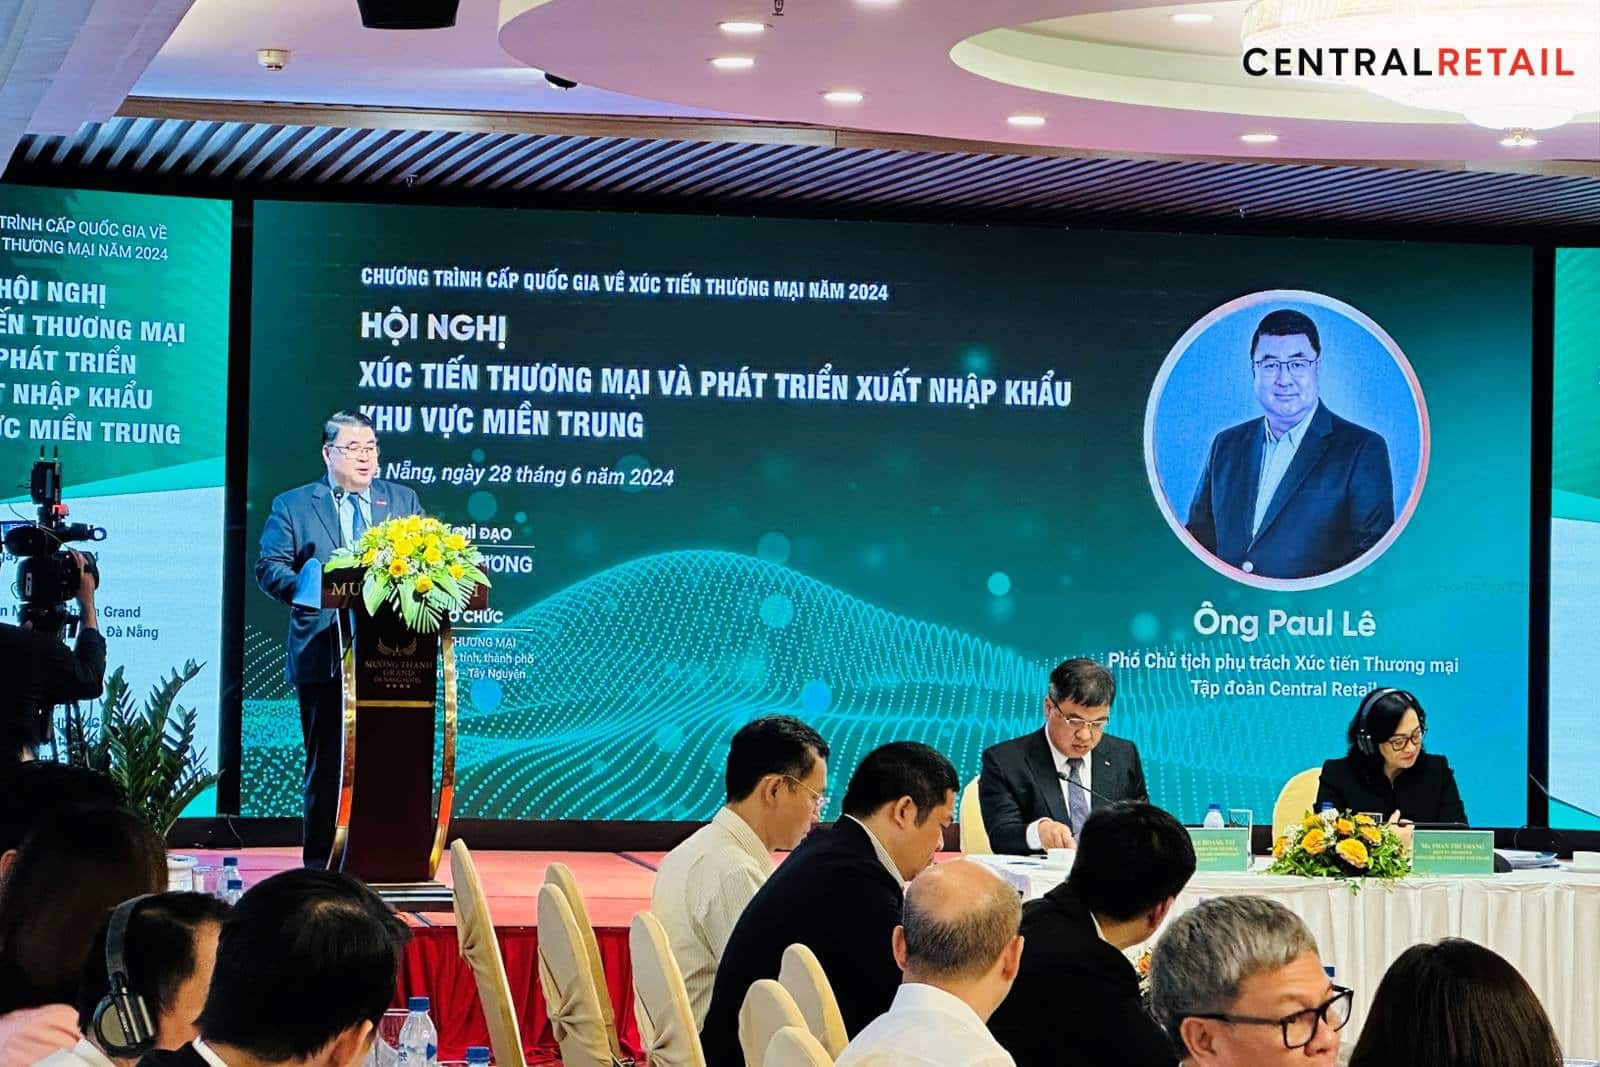 Central Retail Việt Nam tham dự Hội nghị Xúc tiến Thương mại và Phát triển Xuất nhập khẩu Khu vực miền Trung tại Đà Nẵng